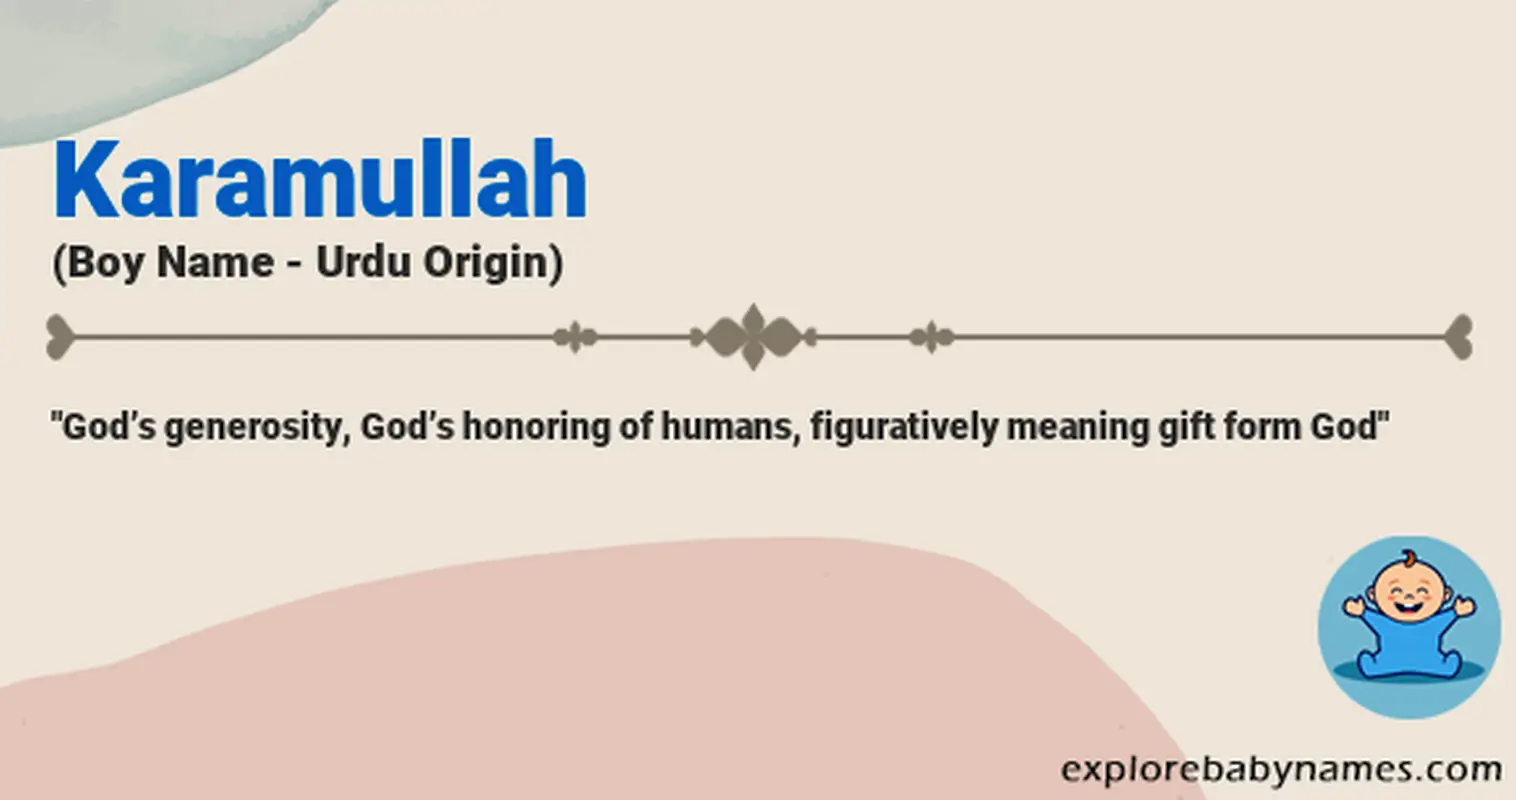 Meaning of Karamullah